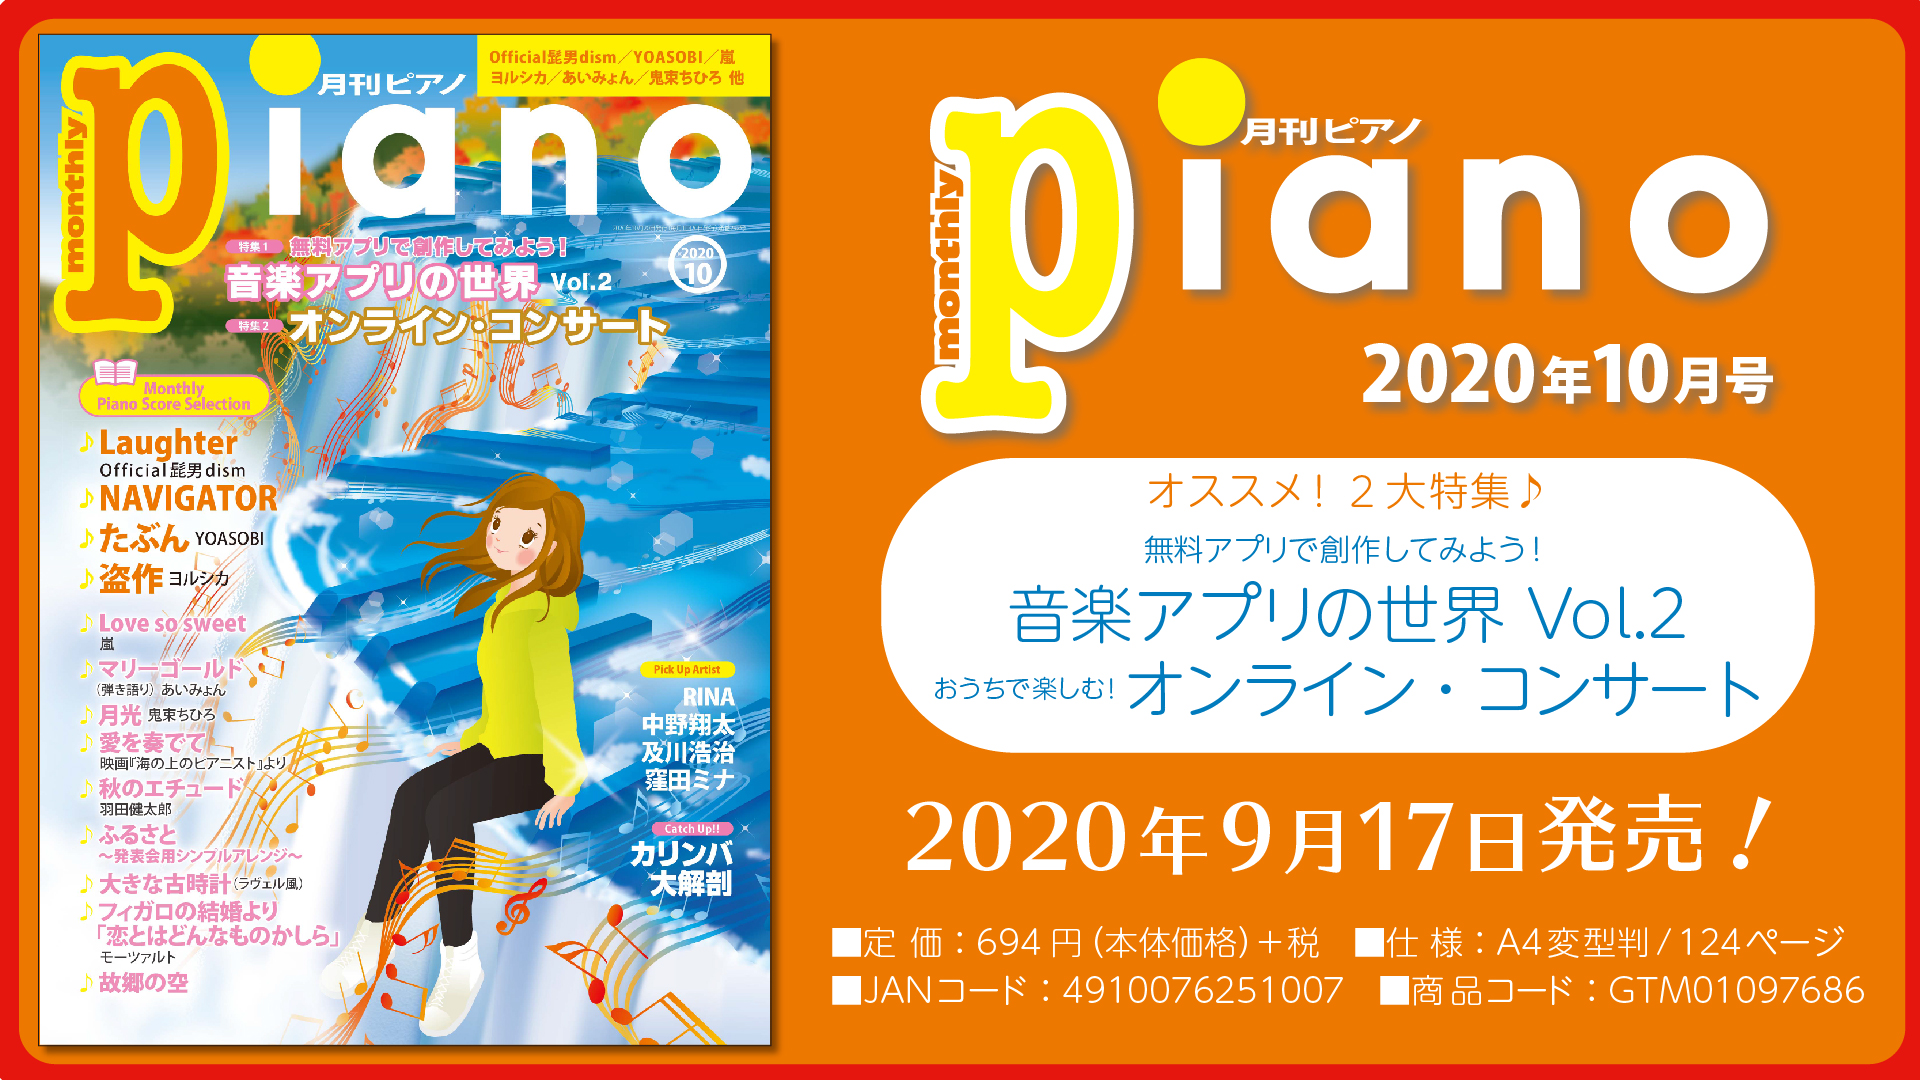 今月の特集は「音楽アプリの世界 Vol.2」u0026「オンライン・コンサート」『月刊ピアノ2020年10月号』 2020年9月17日発売 | NEWSCAST